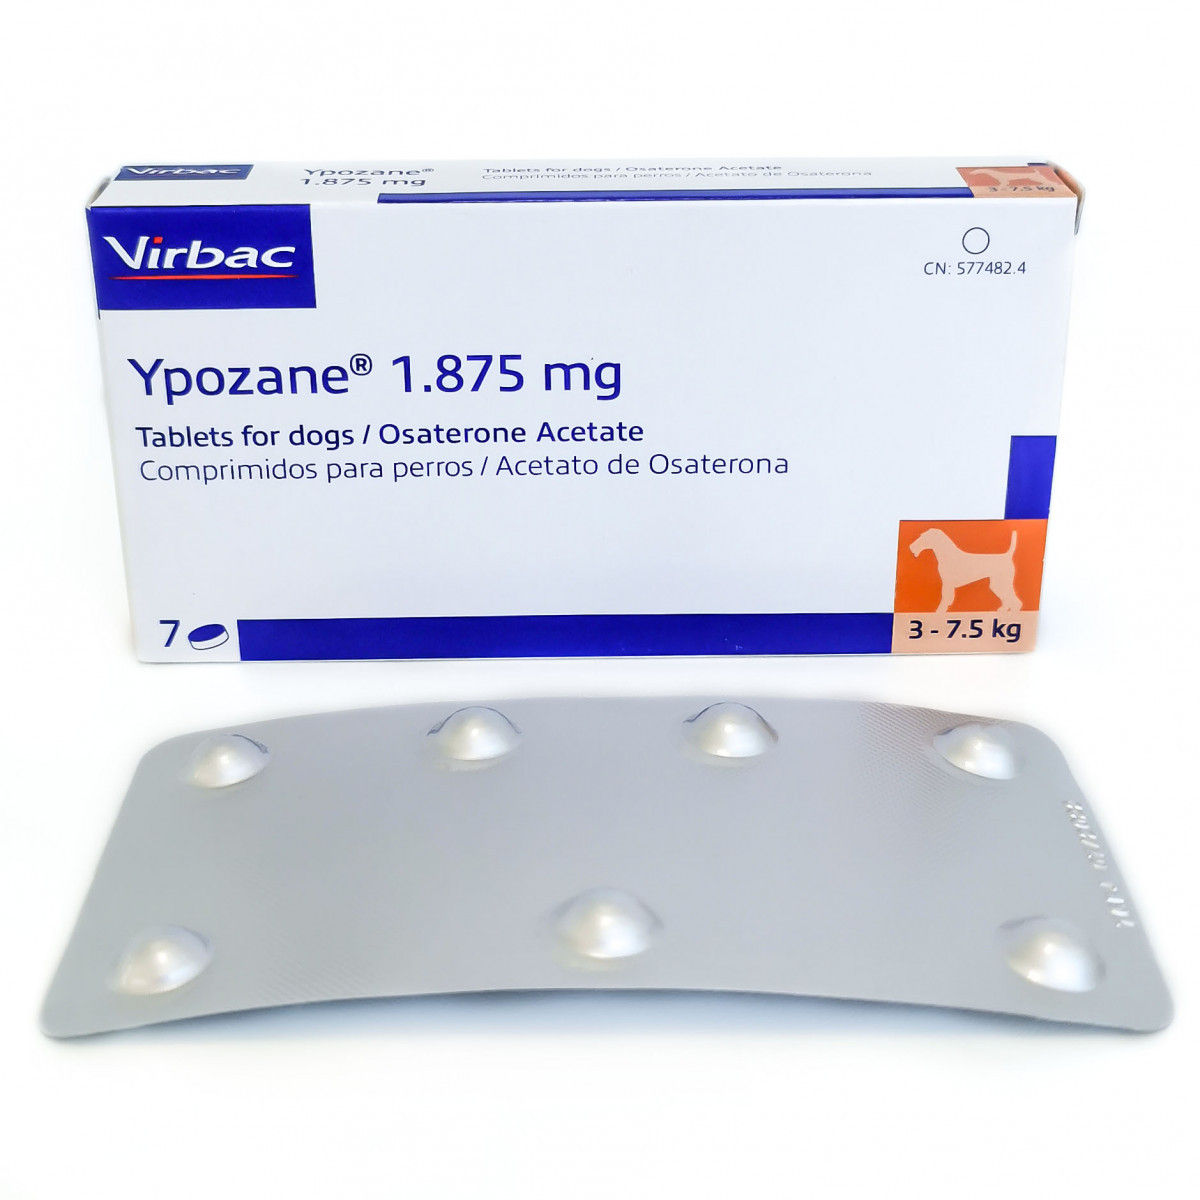 Іпозан 1,875 мг Ypozane S Virbac для лікування передміхурової залози у собак вагою 3 - 7,5 кг, 7 таблеток